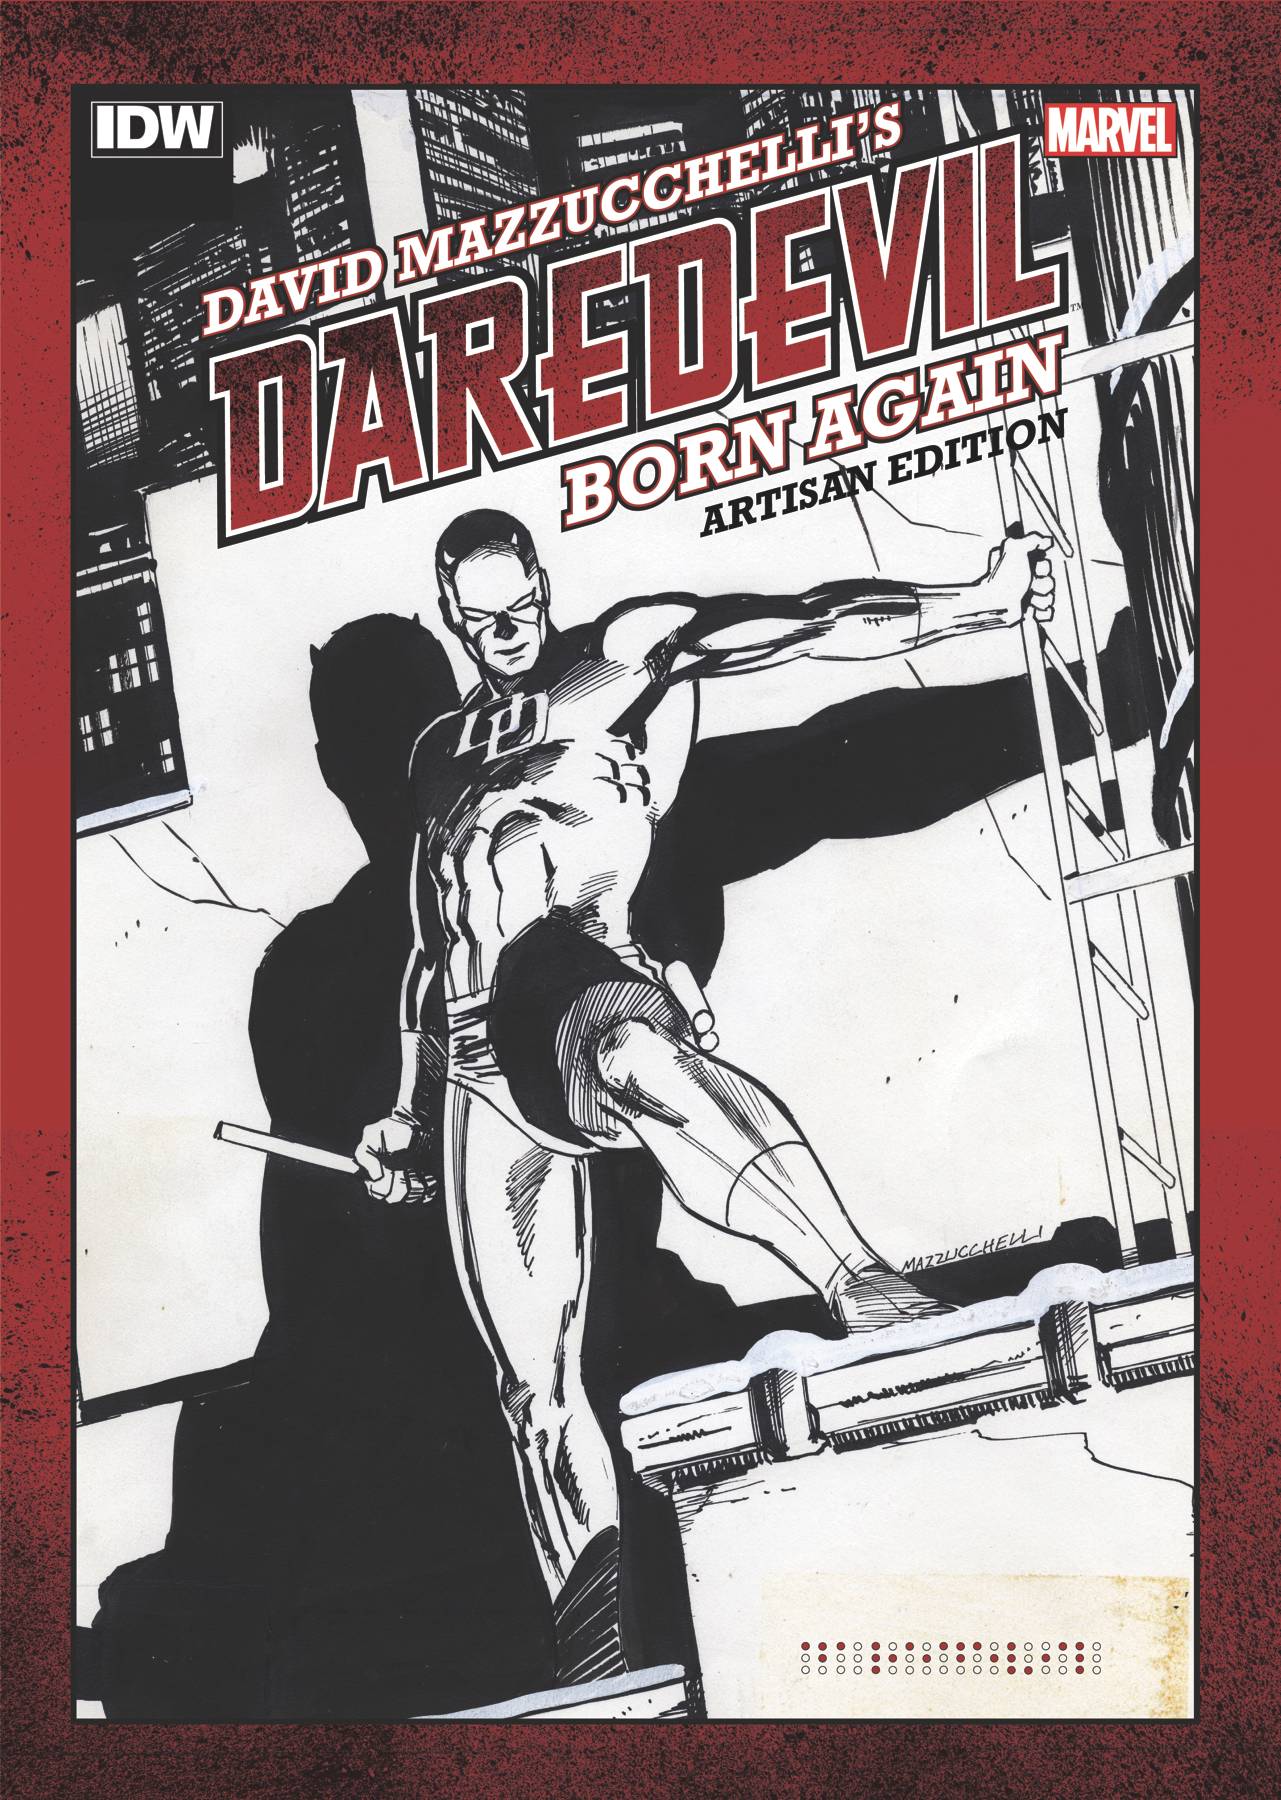 Artisan Edition Volume 1 David Mazzuchelli's Daredevil Born Again